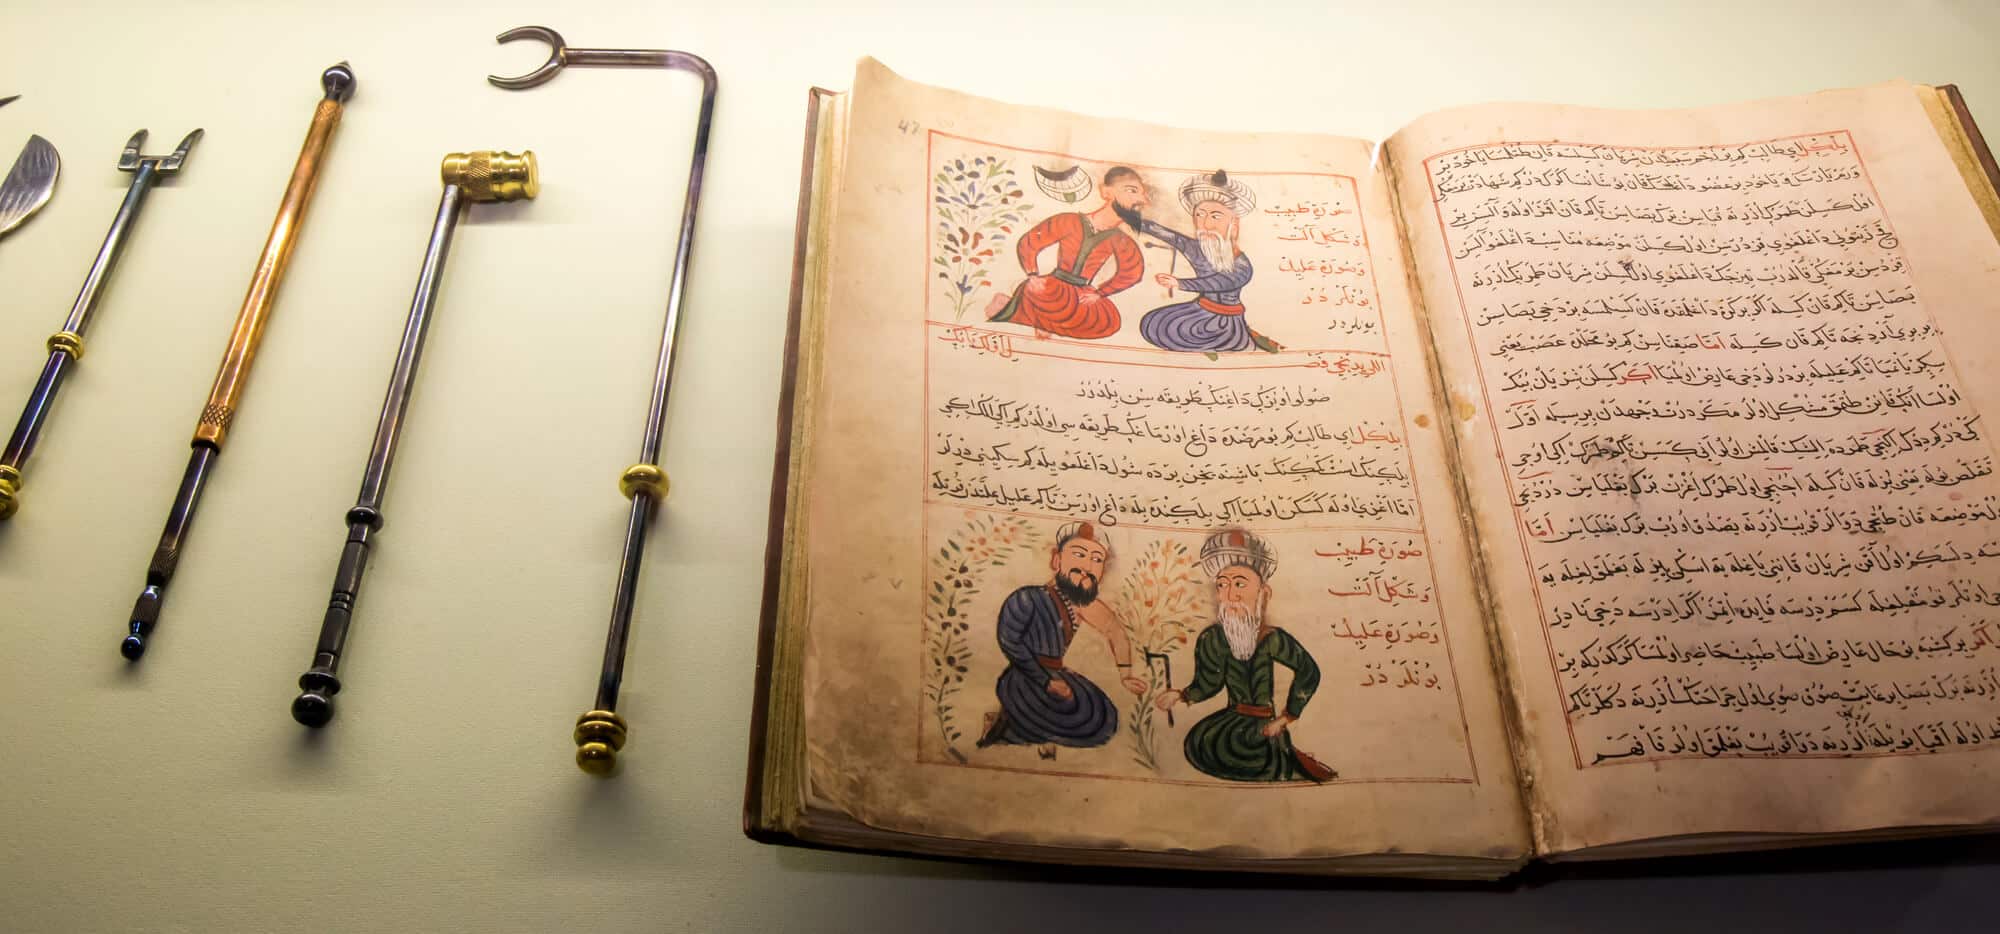 ספר וציוד ששימשו את הרופאים הערבים בימי הביניים. <a href="https://depositphotos.com. ">המחשה: depositphotos.com</a>